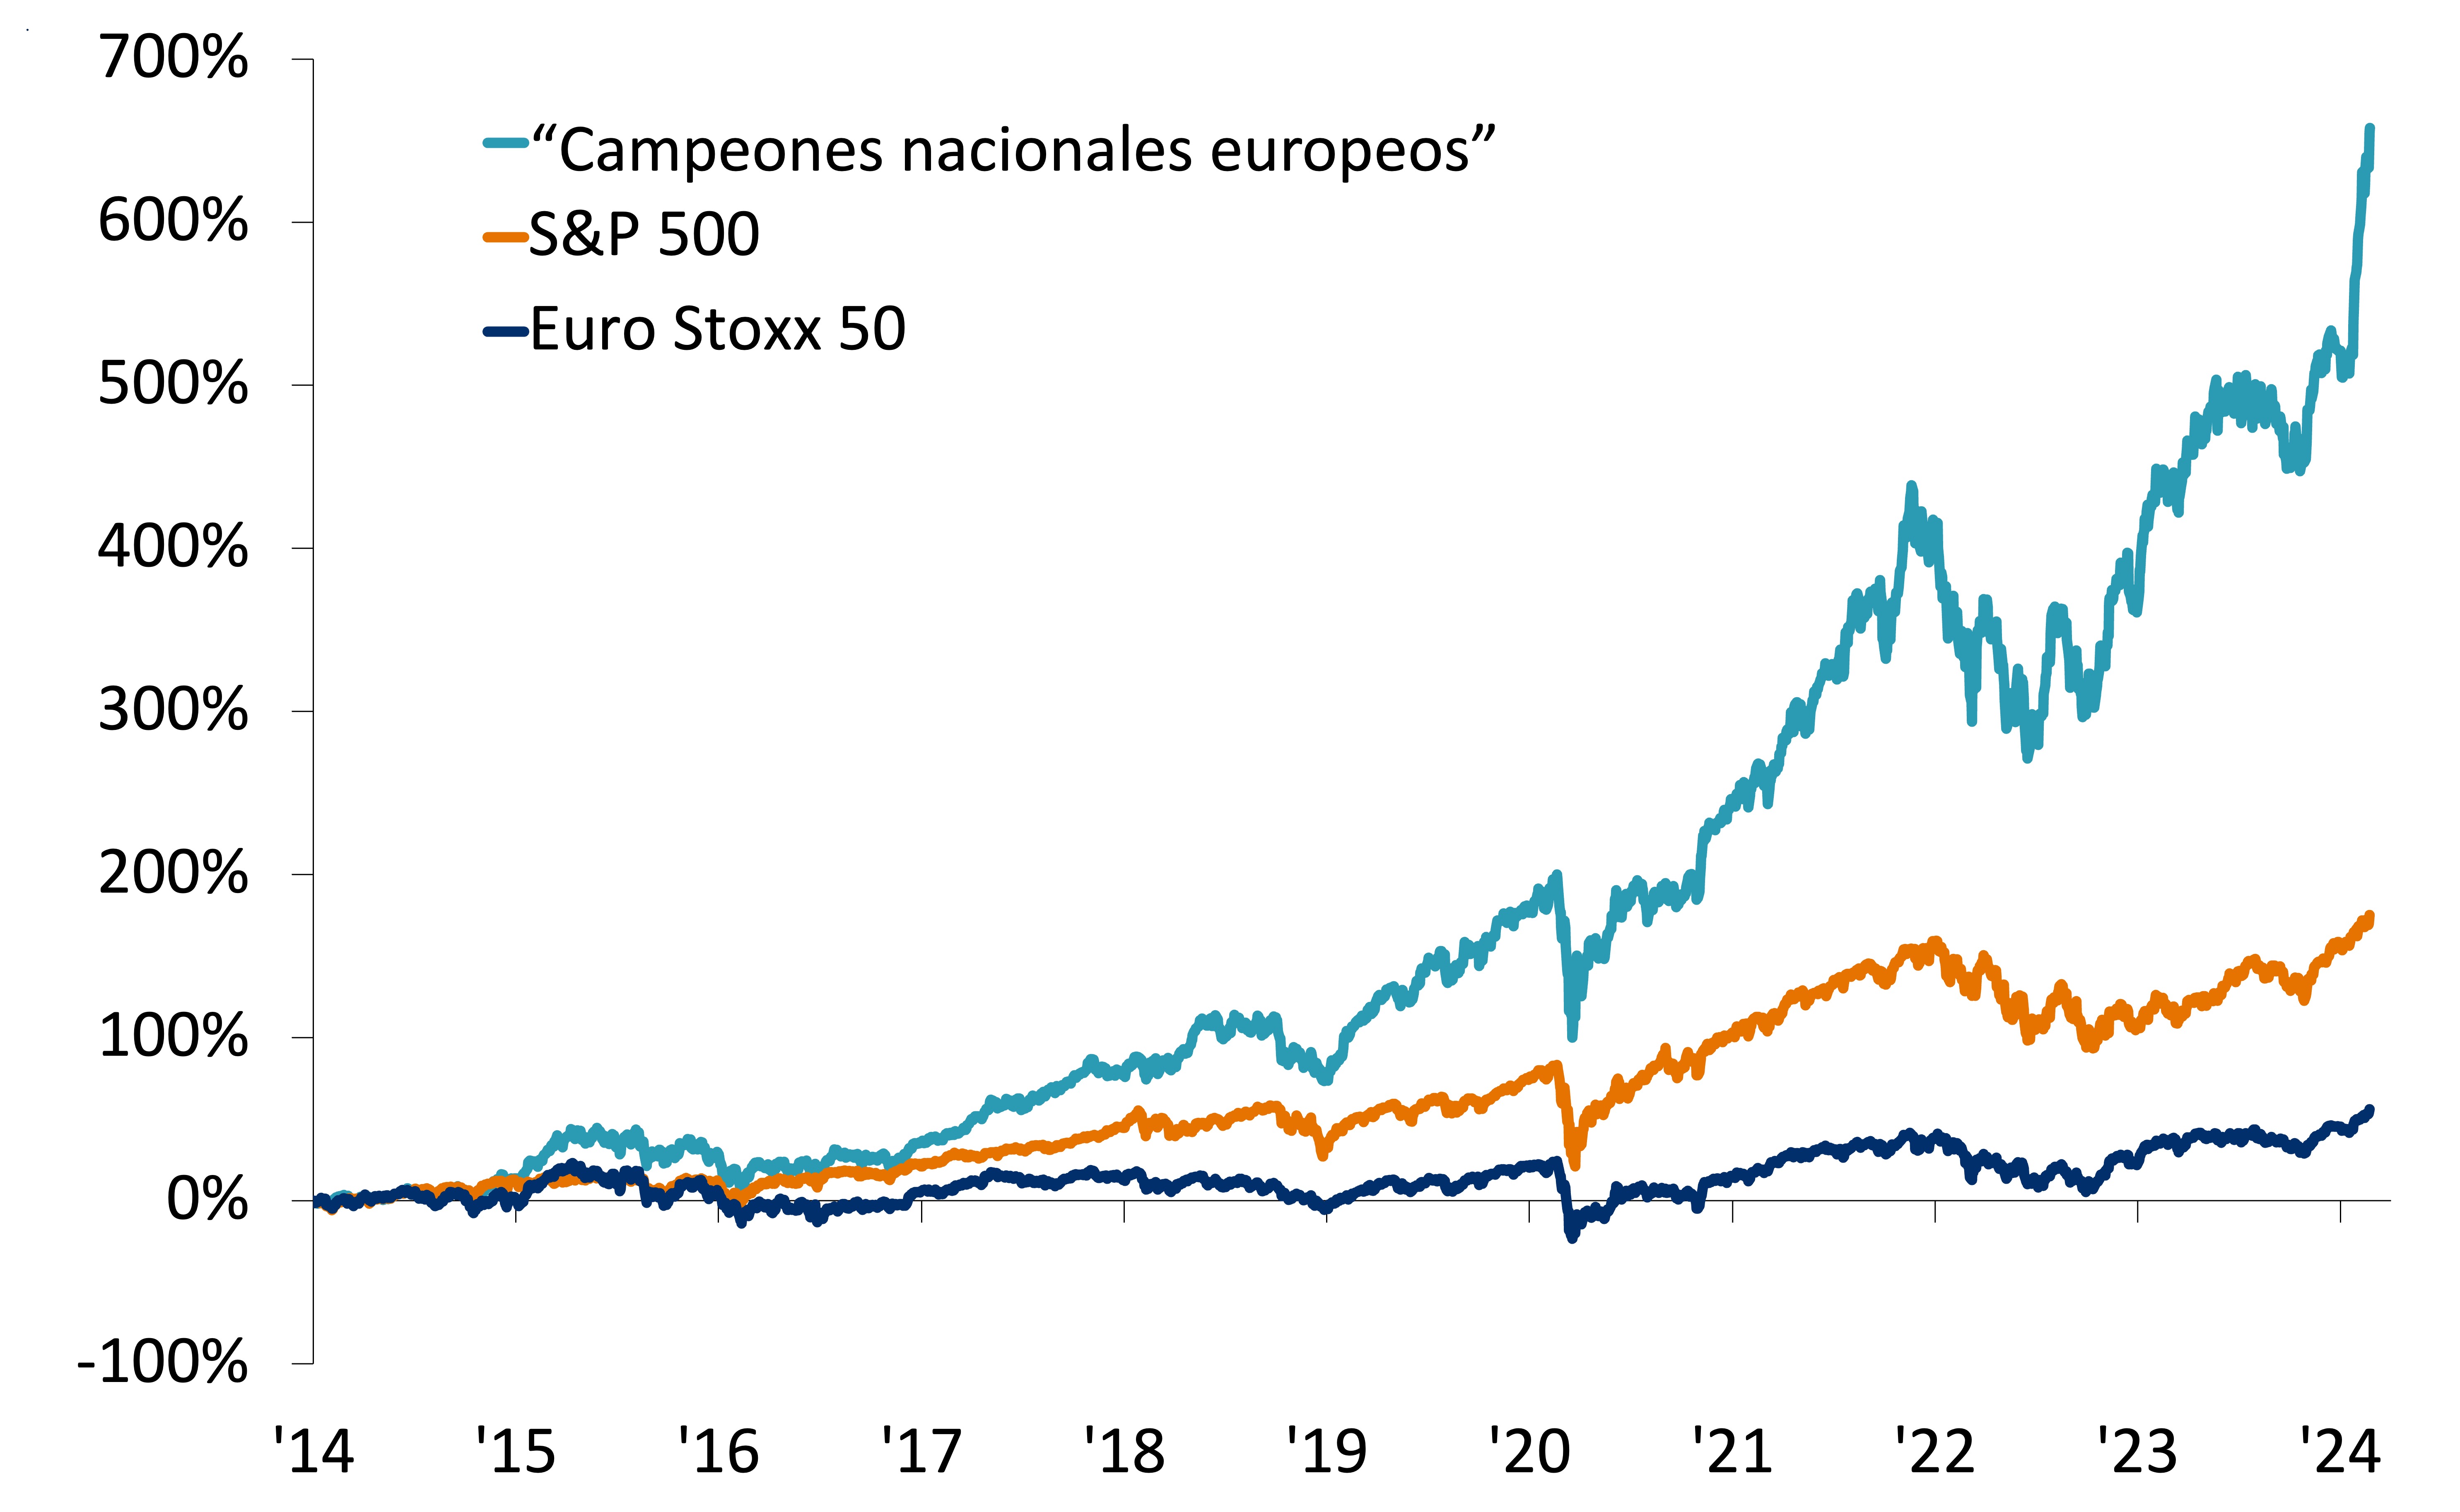 Este gráfico muestra el retorno de los precios desde principios de 2014 para el S&P 500, Euro Stoxx 50 y los “campeones nacionales europeos” LVMH, Hermes, Safran, Schneider, ASML, Ferrari y Novo Nordisk, incluidos en una cesta igualmente ponderada.